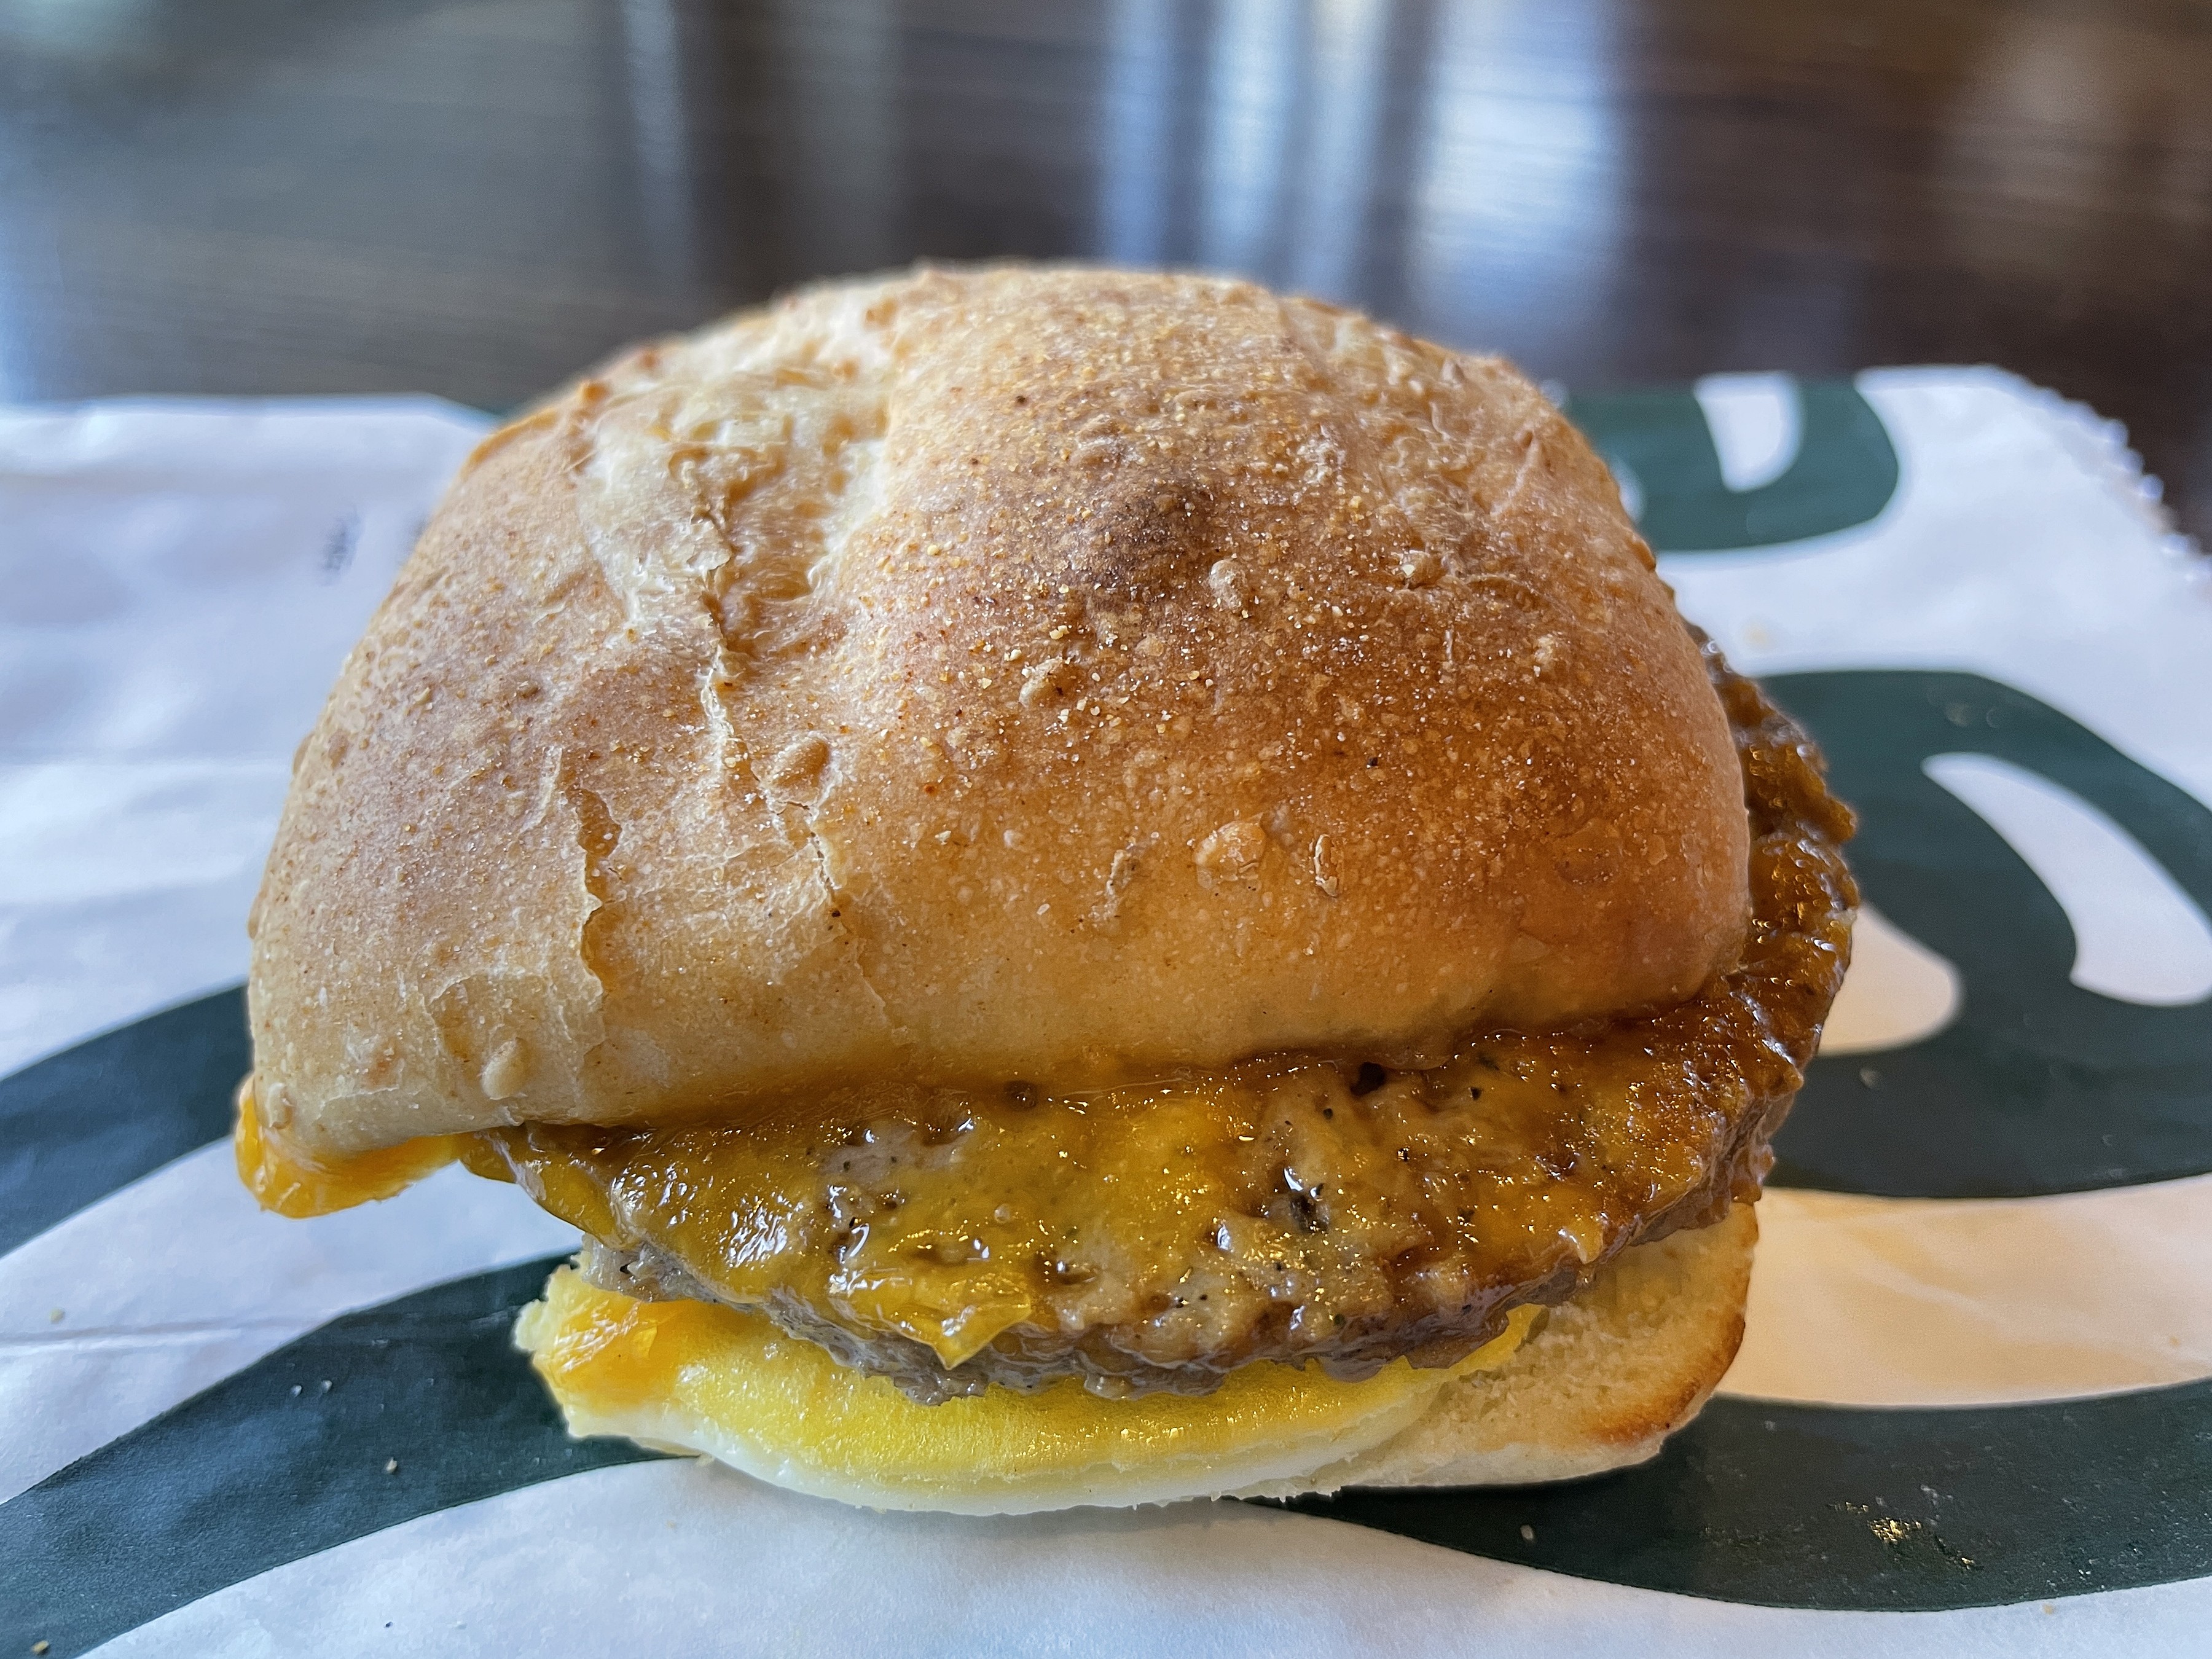 Impossible breakfast sandwich from Starbucks.